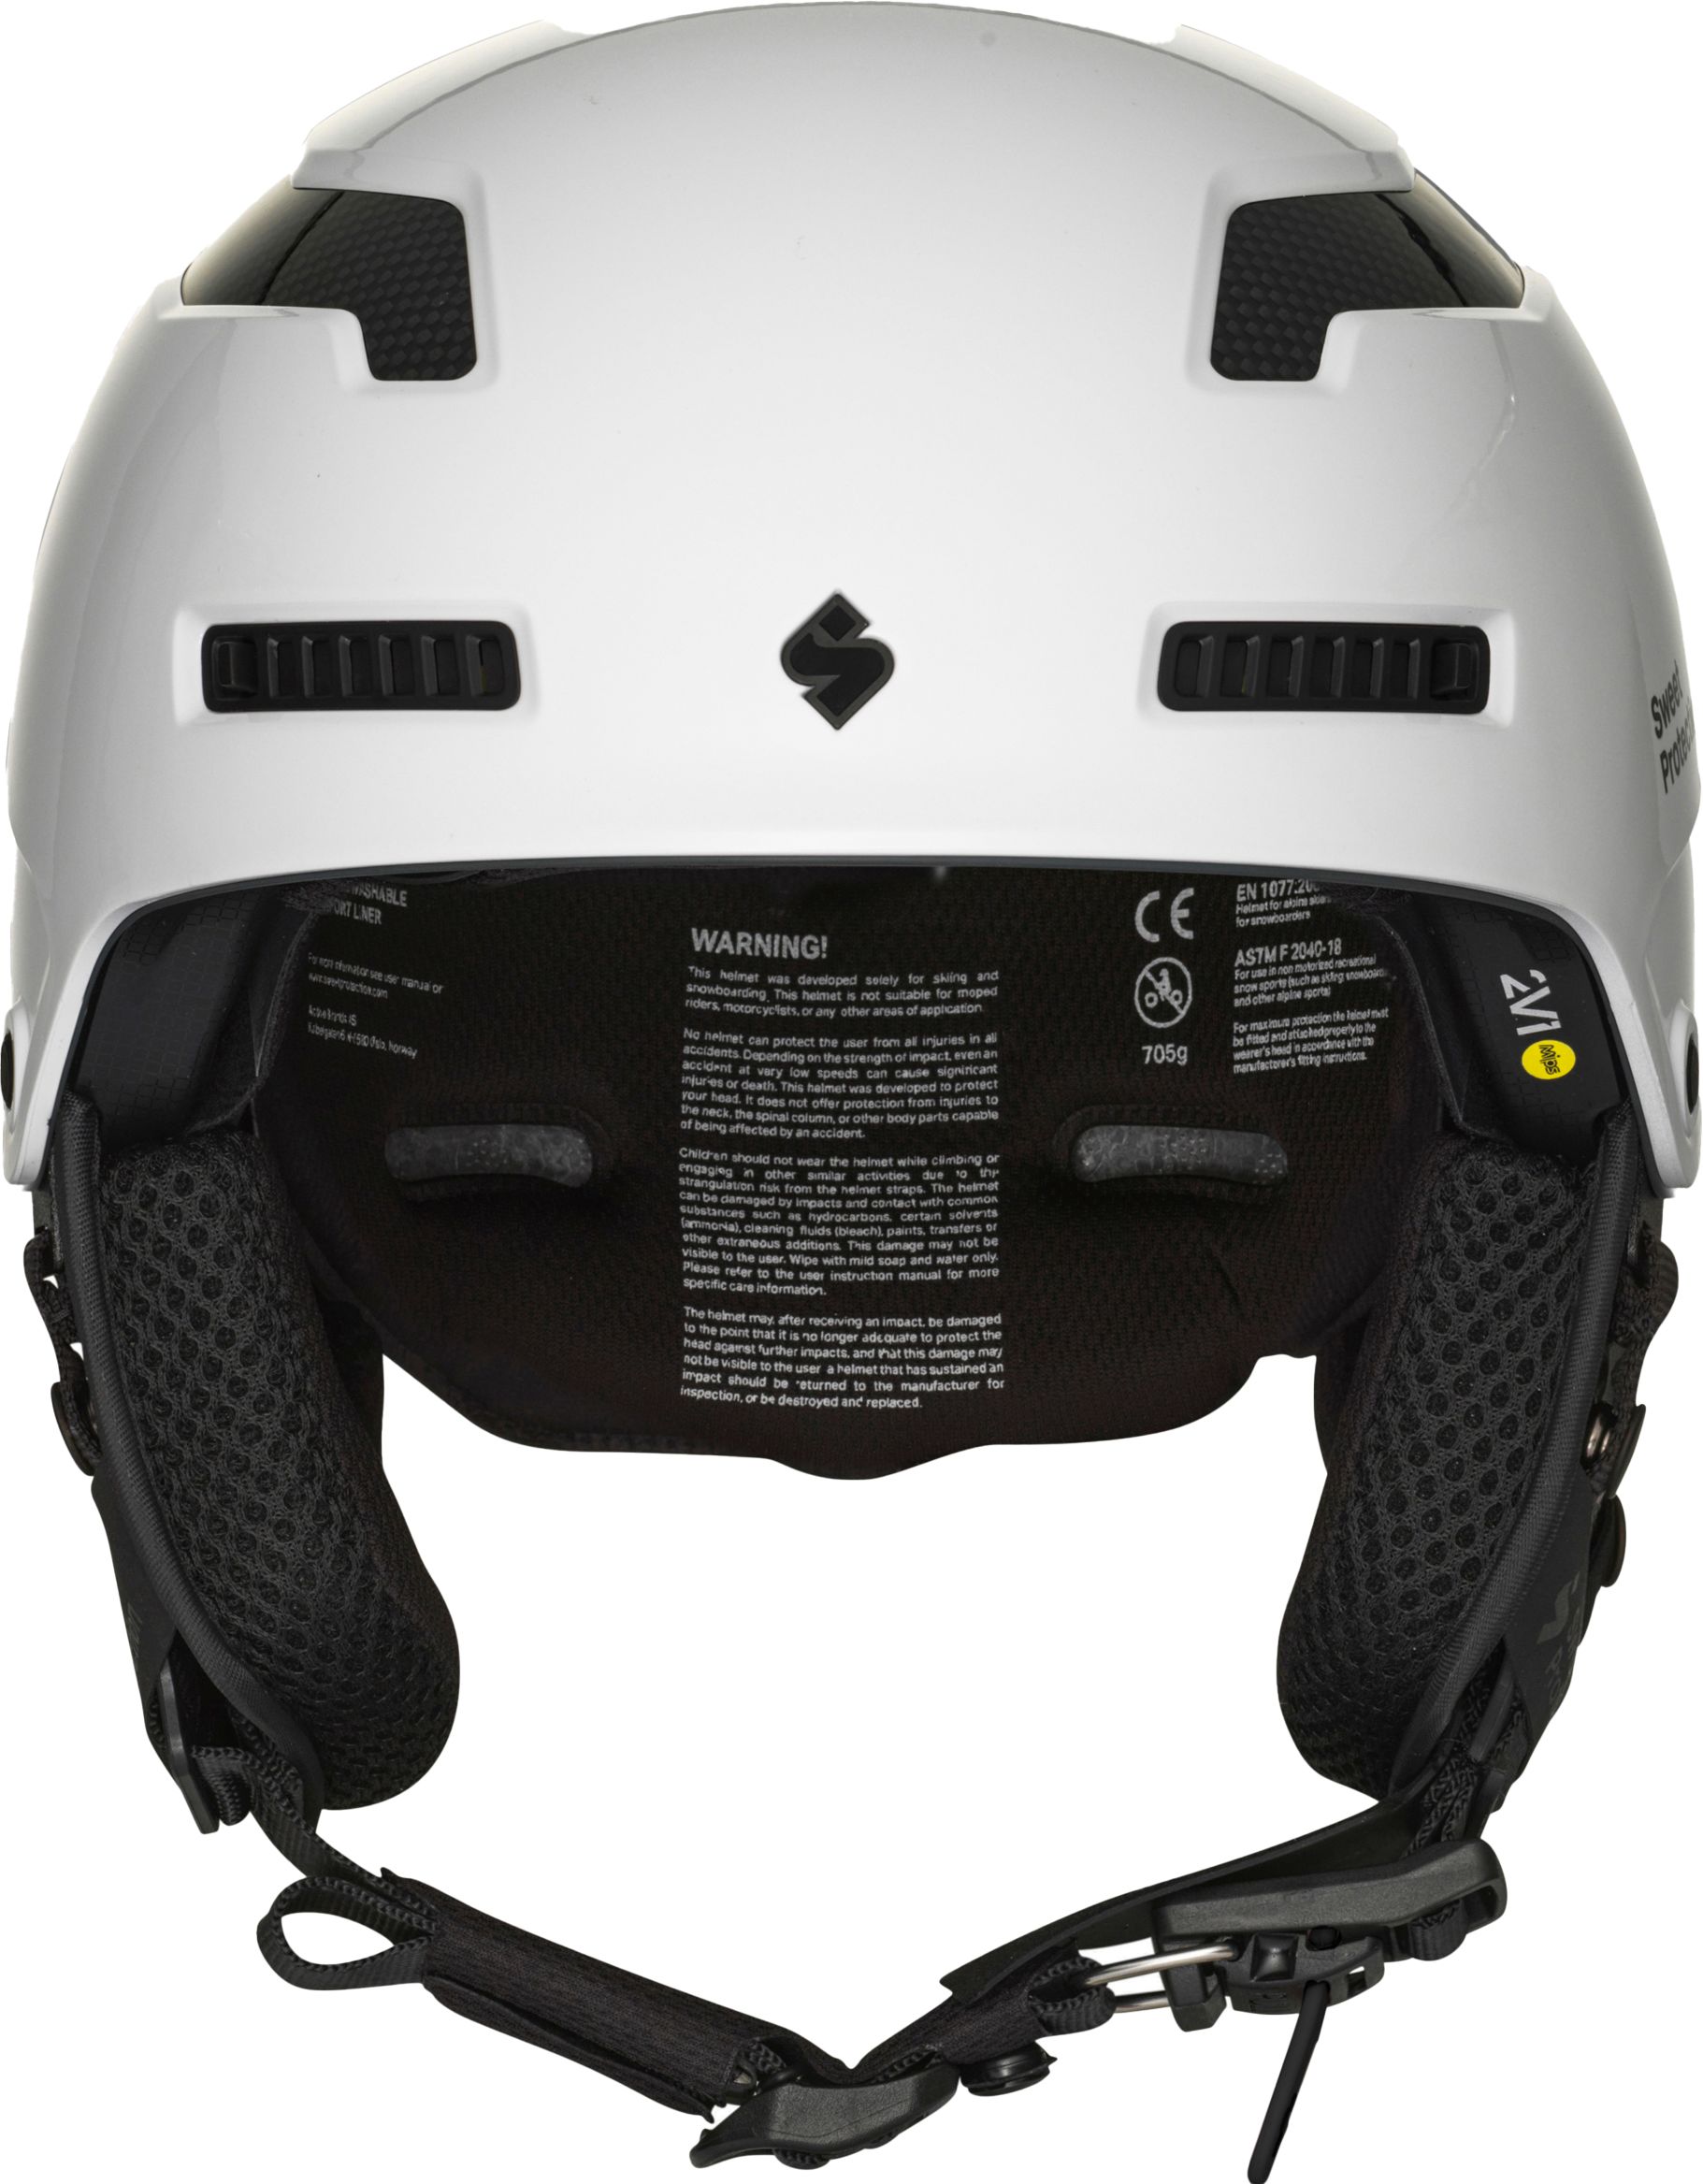 SWEET PROTECTION, Trooper 2Vi MIPS Helmet